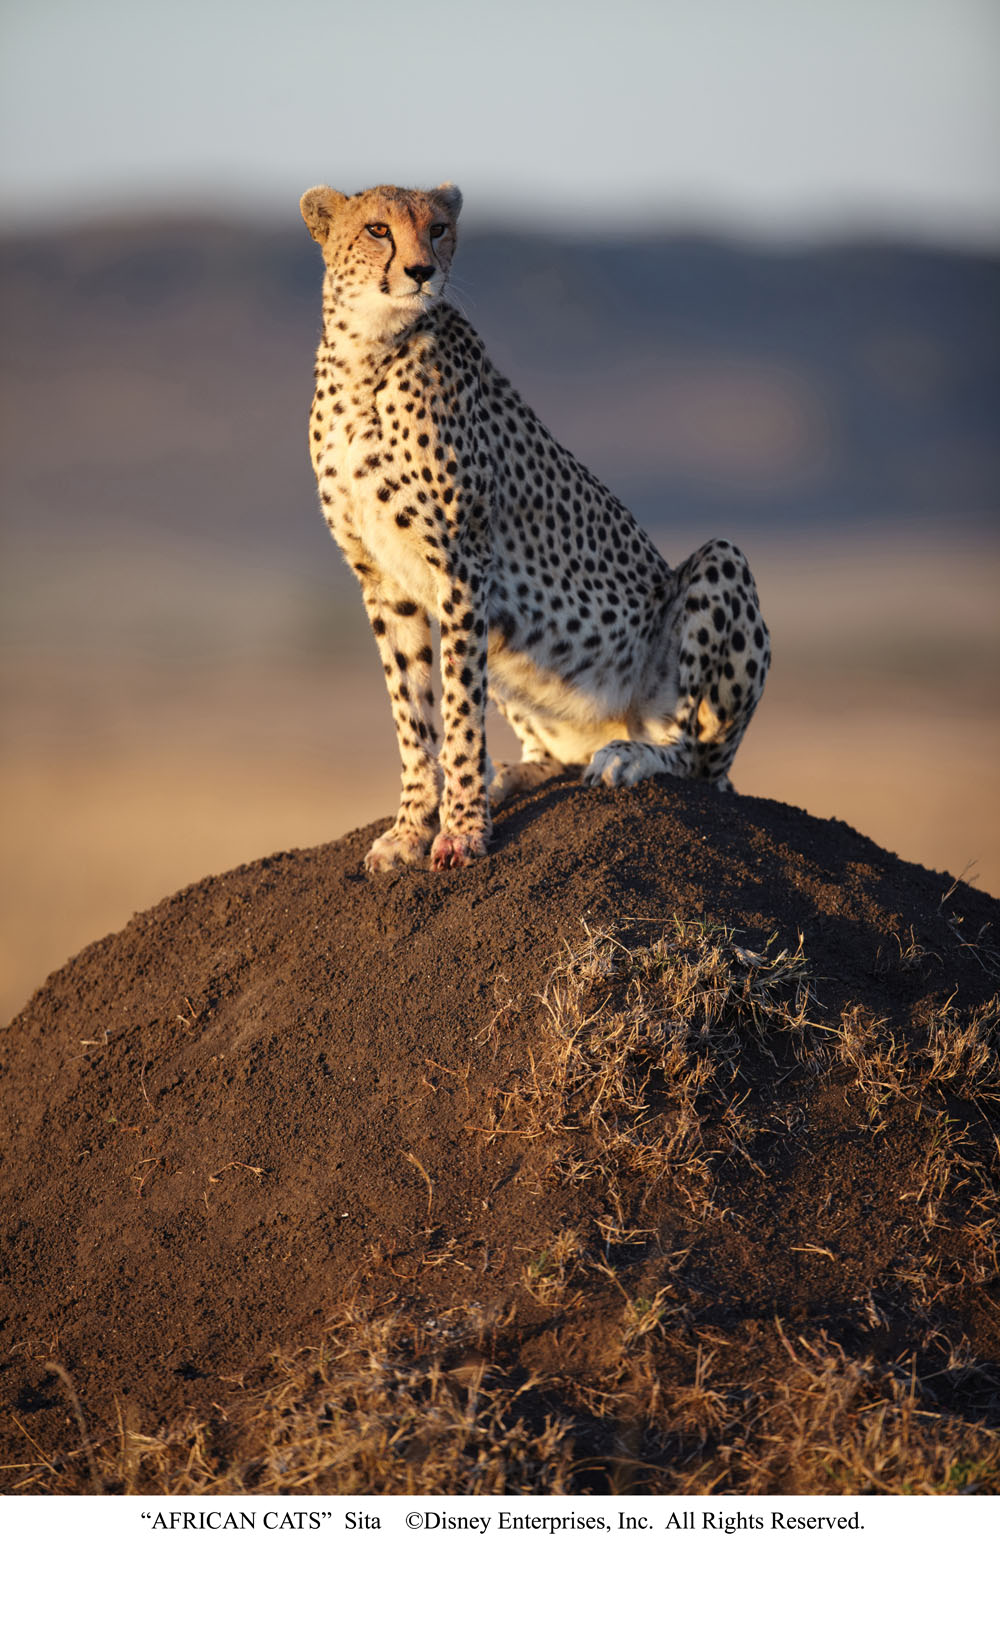 Una scena del film African Cats. -  Dall'articolo: Re leoni e regine ghepardo.